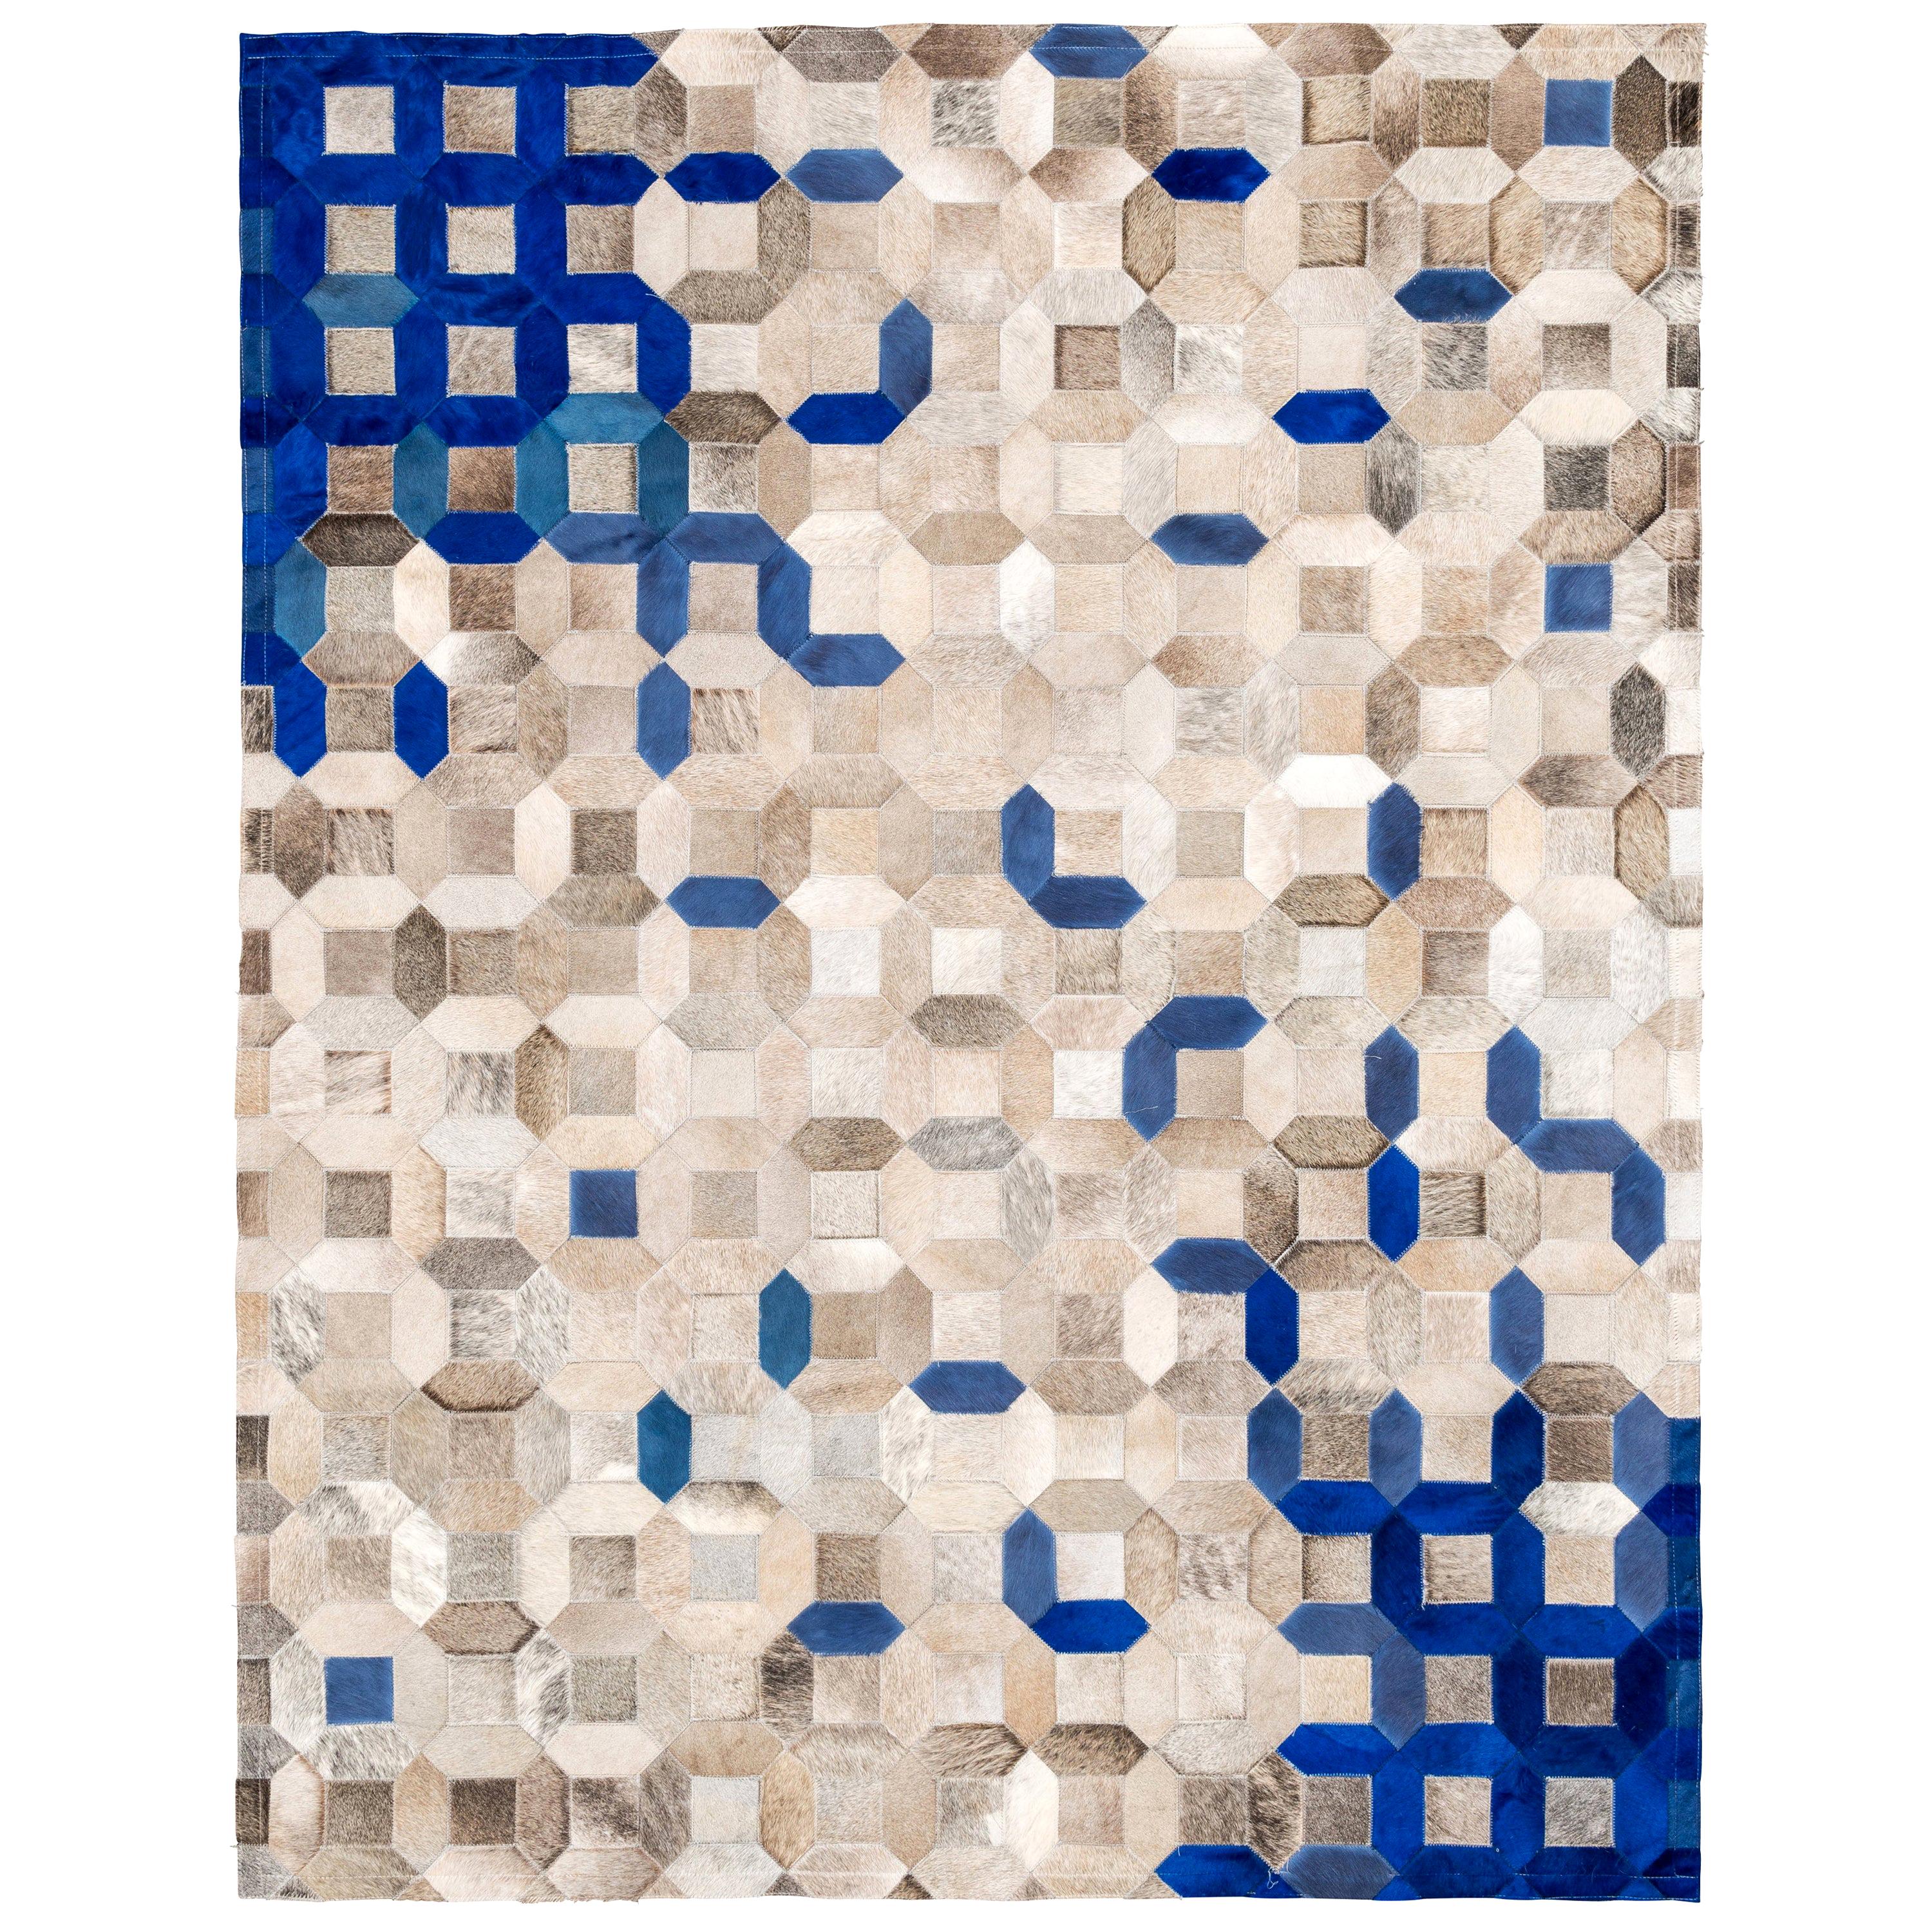 Blau und grau Mosaik Trellis Customizable Cowhide Area Floor Rug Large .